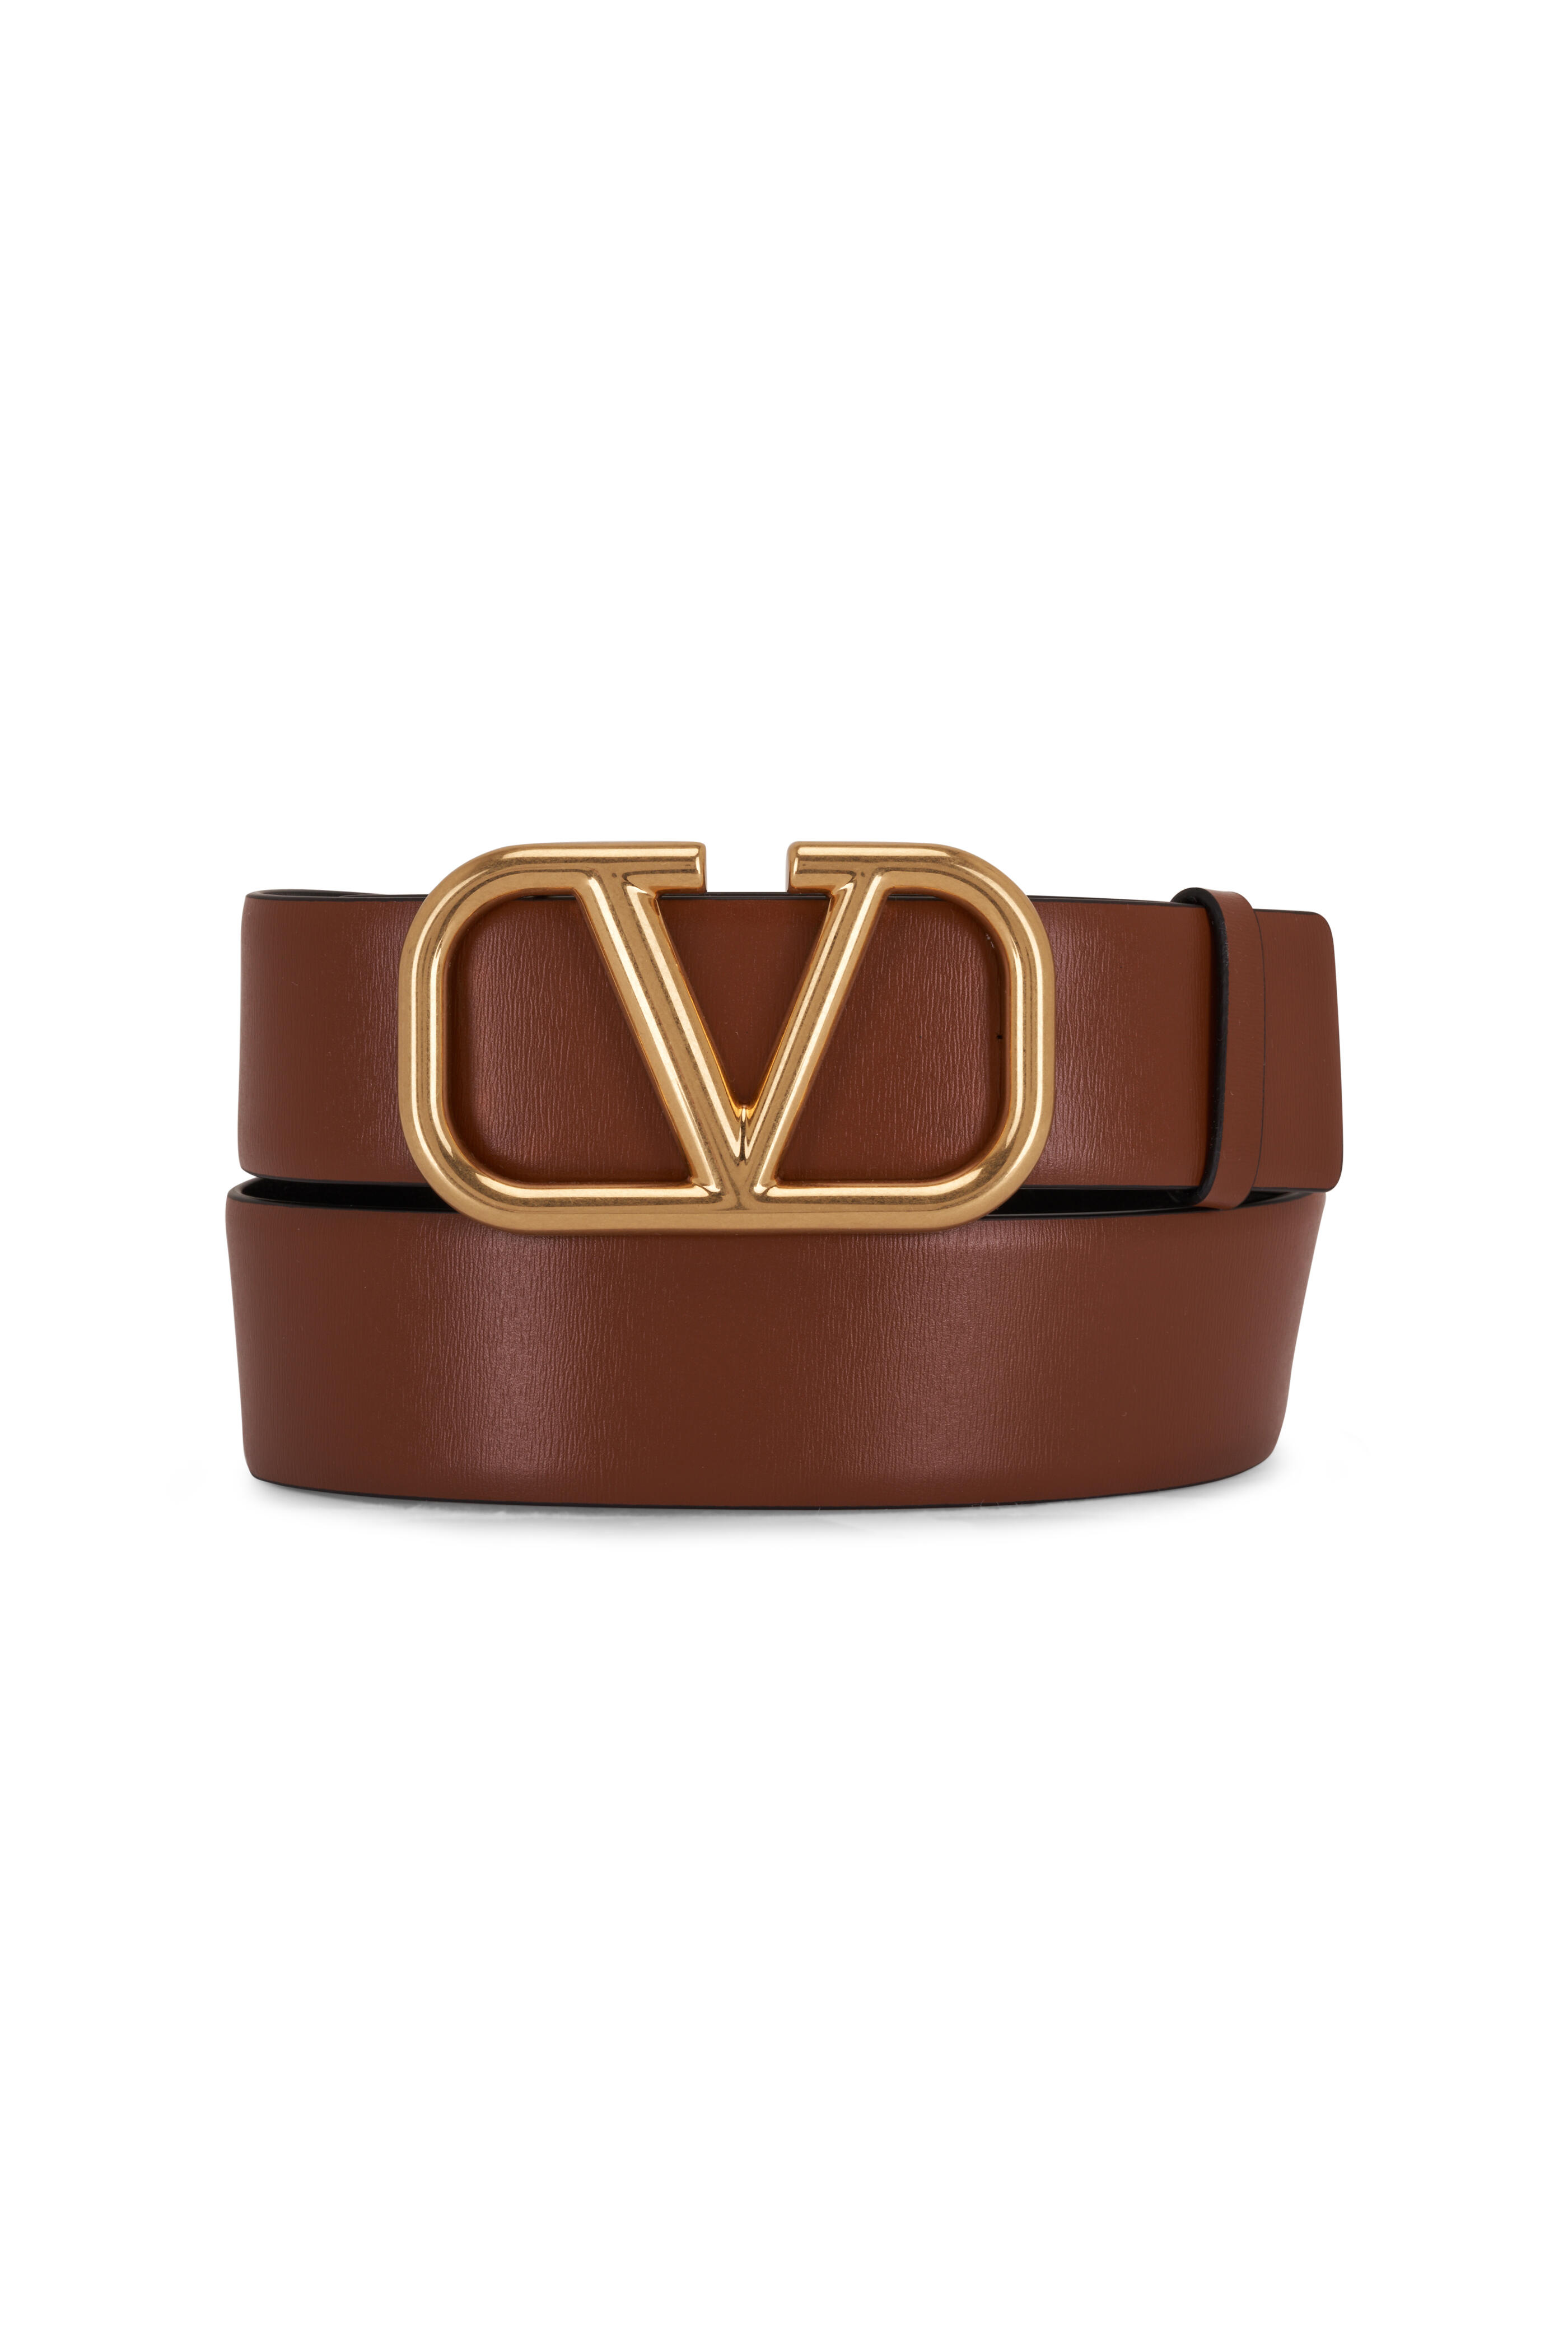 Valentino Garavani Women's Vlogo Signature Belt